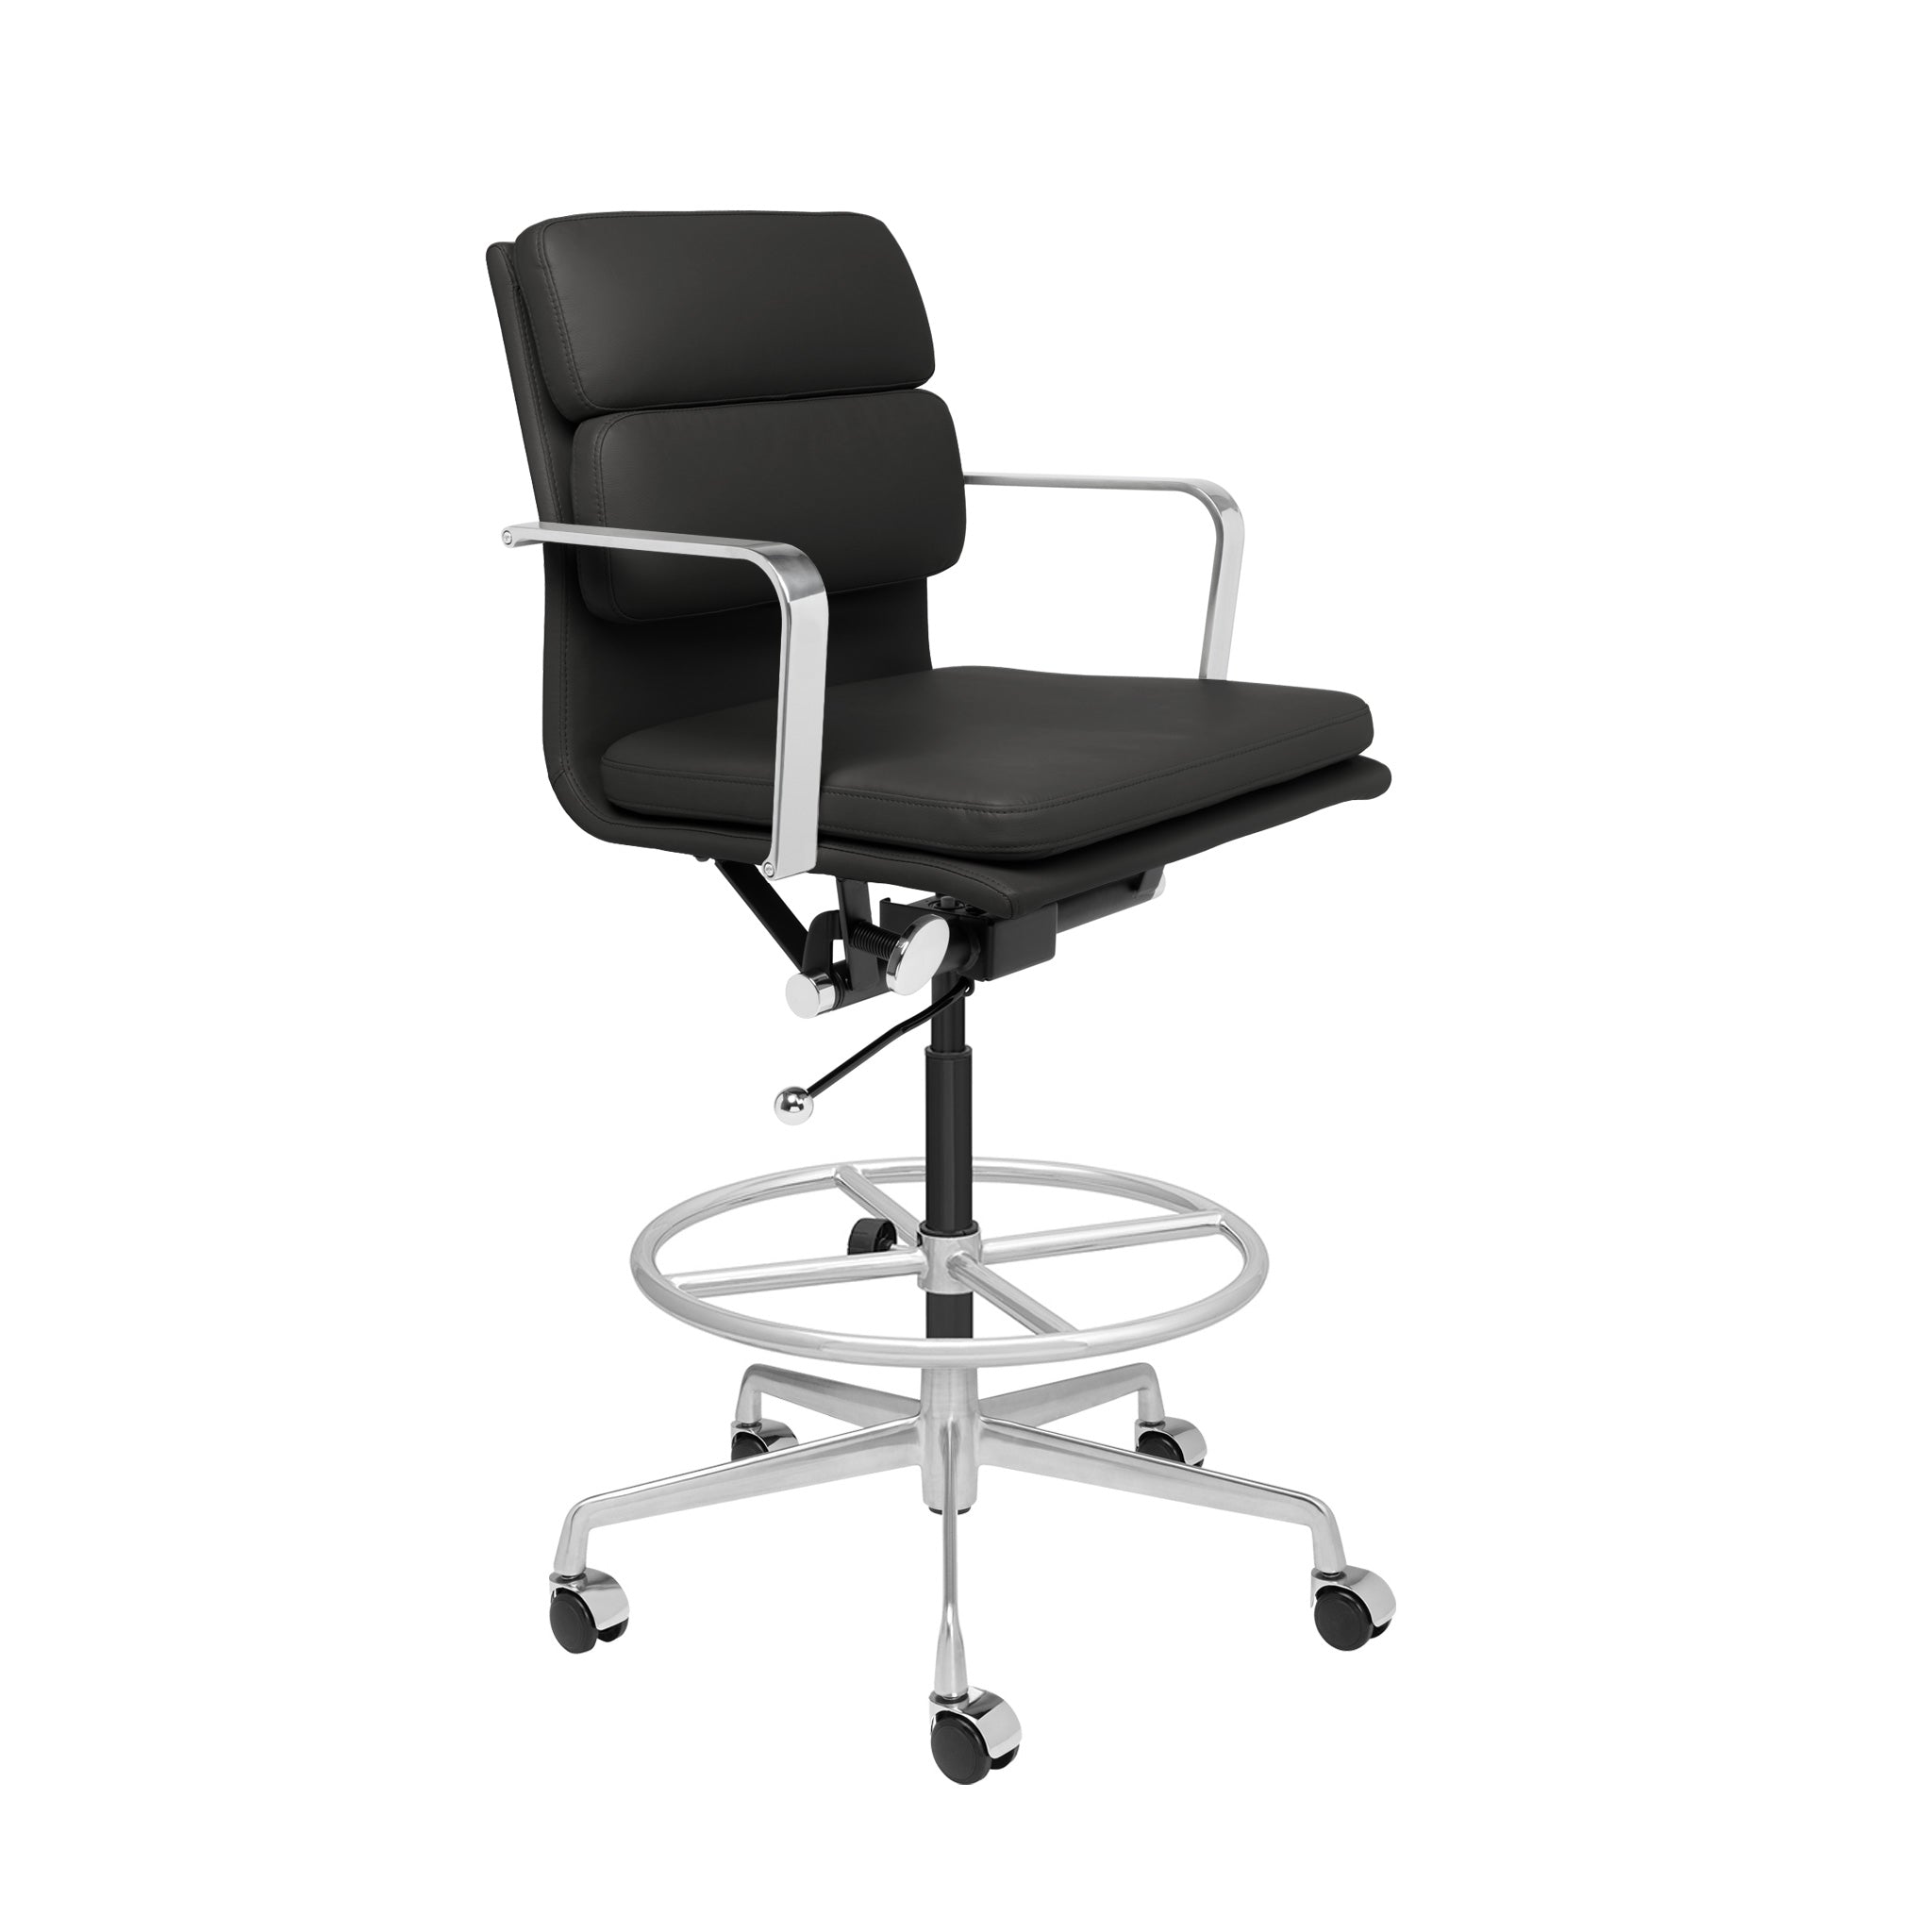 Laura – II Chair Furniture SOHO Padded (Black) Drafting